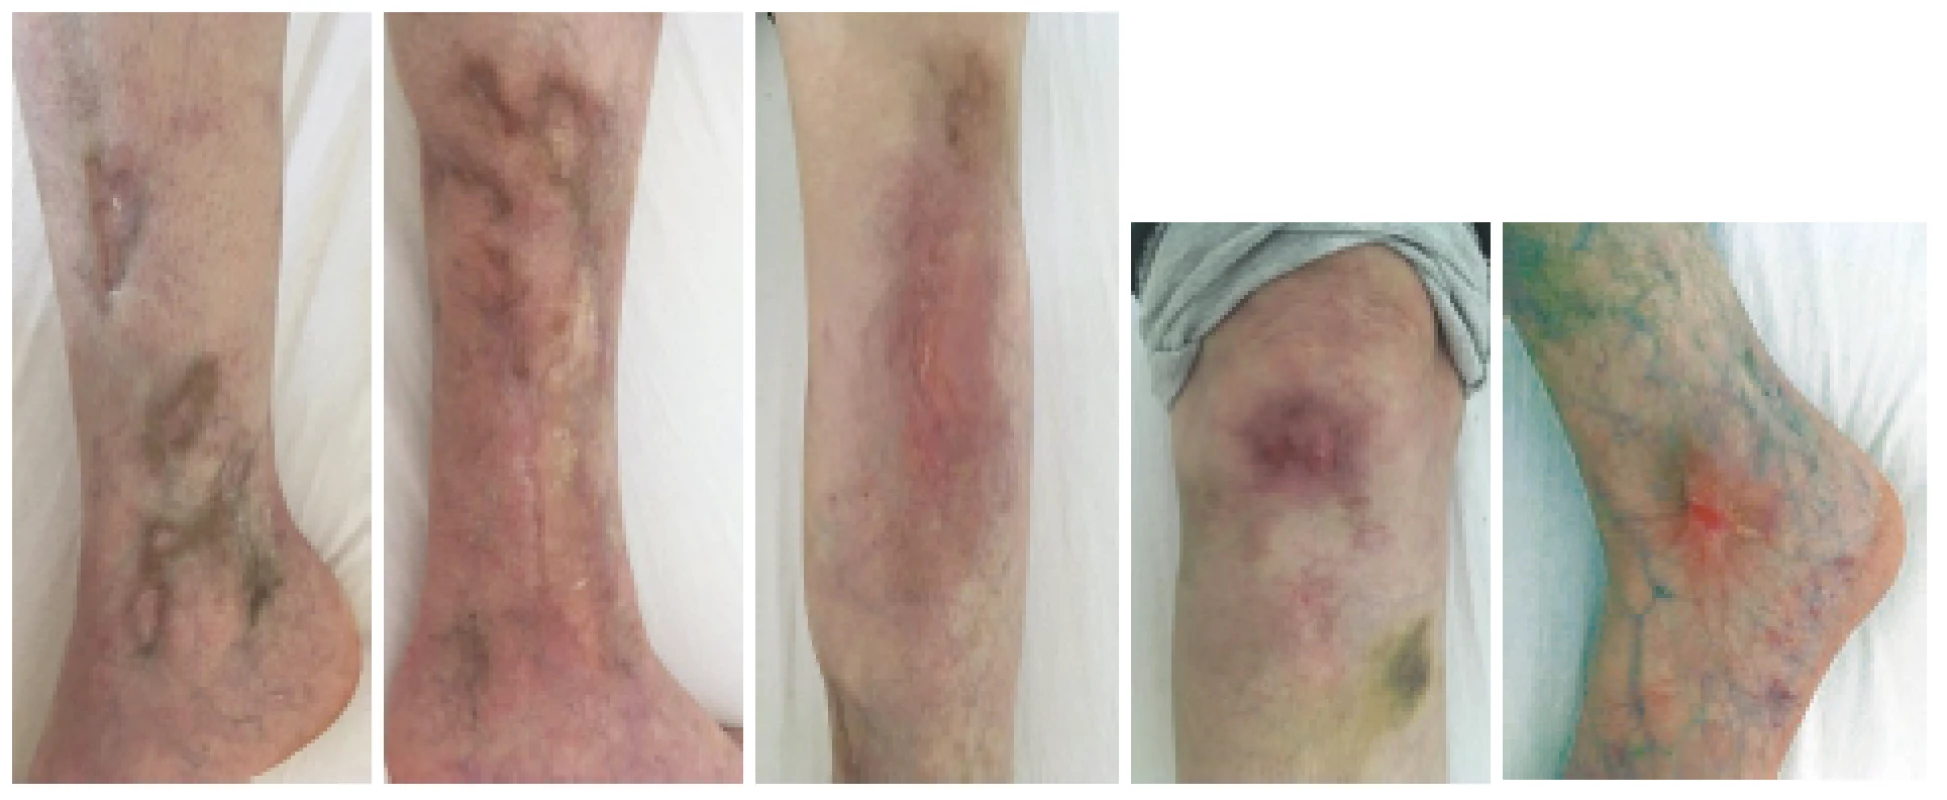 Definitivní zhojení kožní vaskulitidy v květnu 2019 při poslední hospitalizaci v RÚ. Celkem bylo podáno od 11/2017 deset pulzů
cyklofosfamidu v kumulativní dávce 4,1 g.